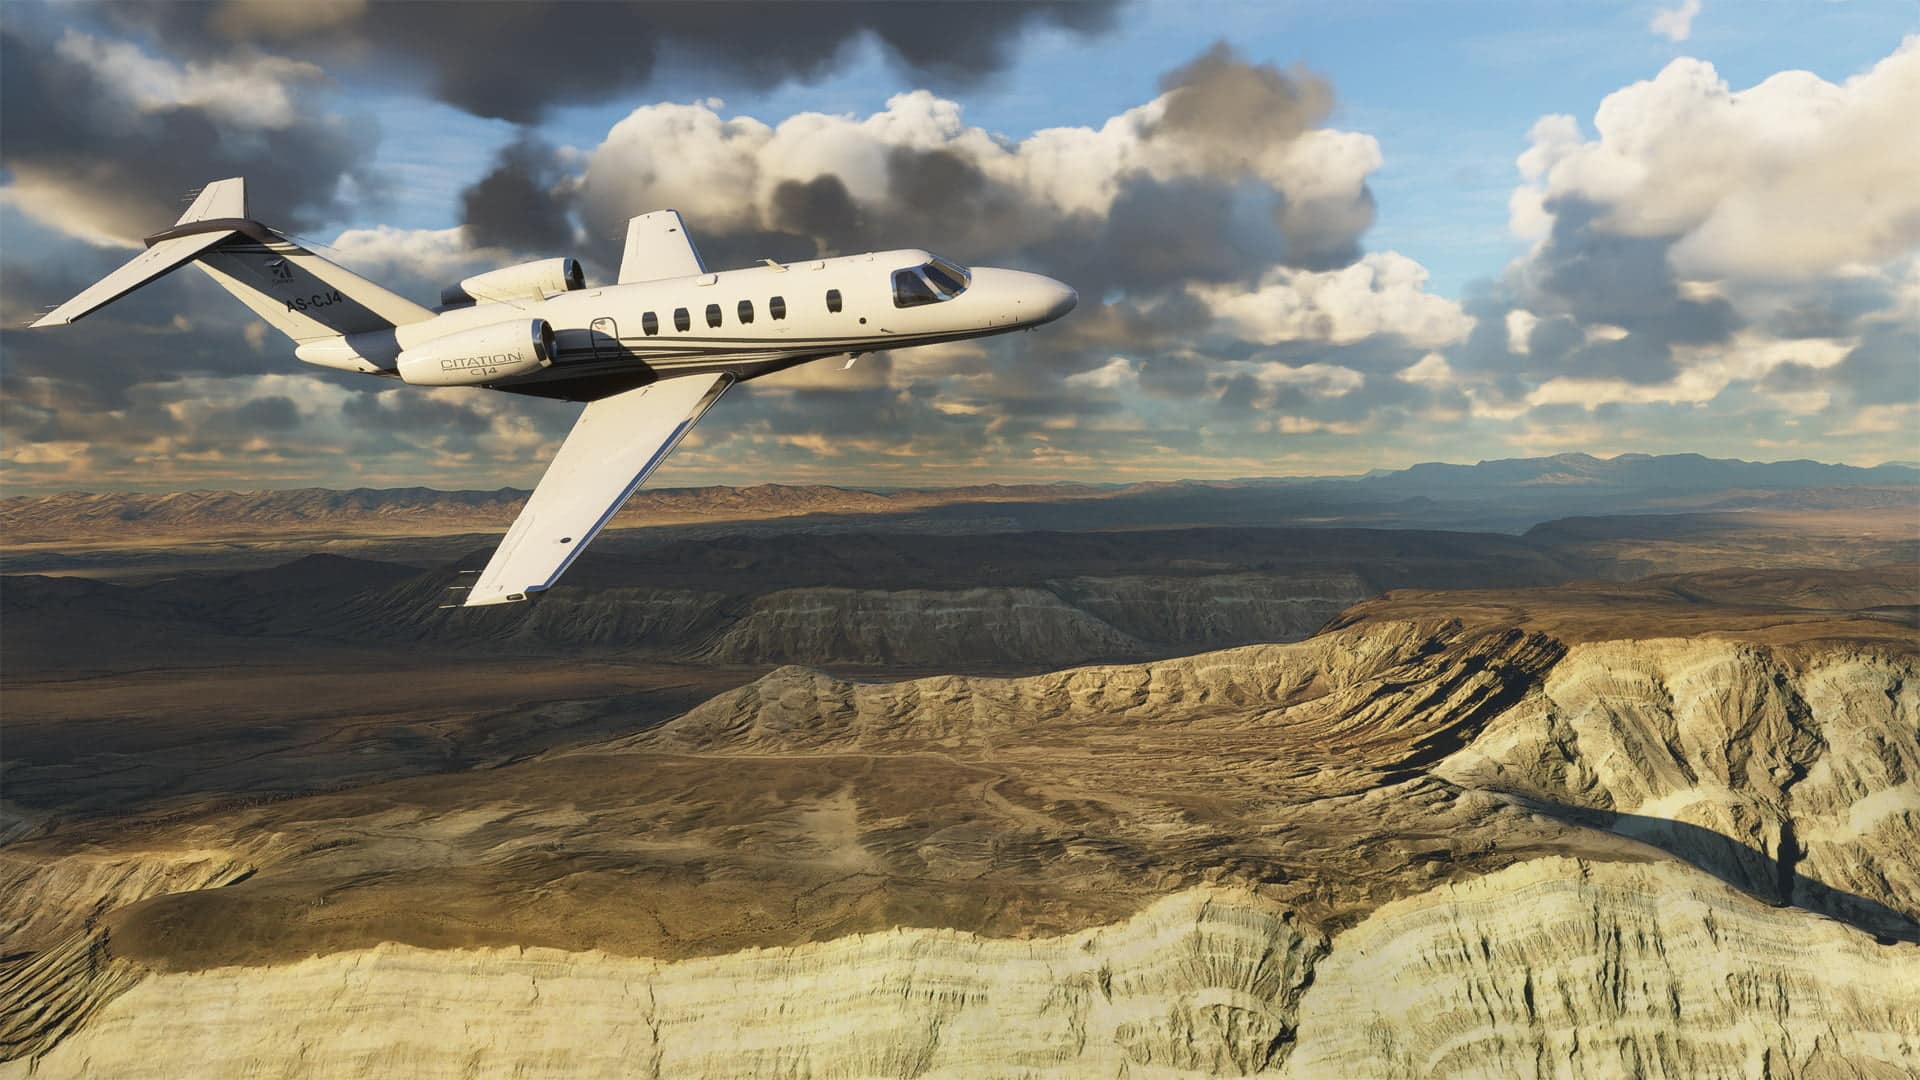 Microsoft flight simulator será lançado em agosto | 855a22b7 microsoft flight simulator 2020 38 | miraculous day notícias